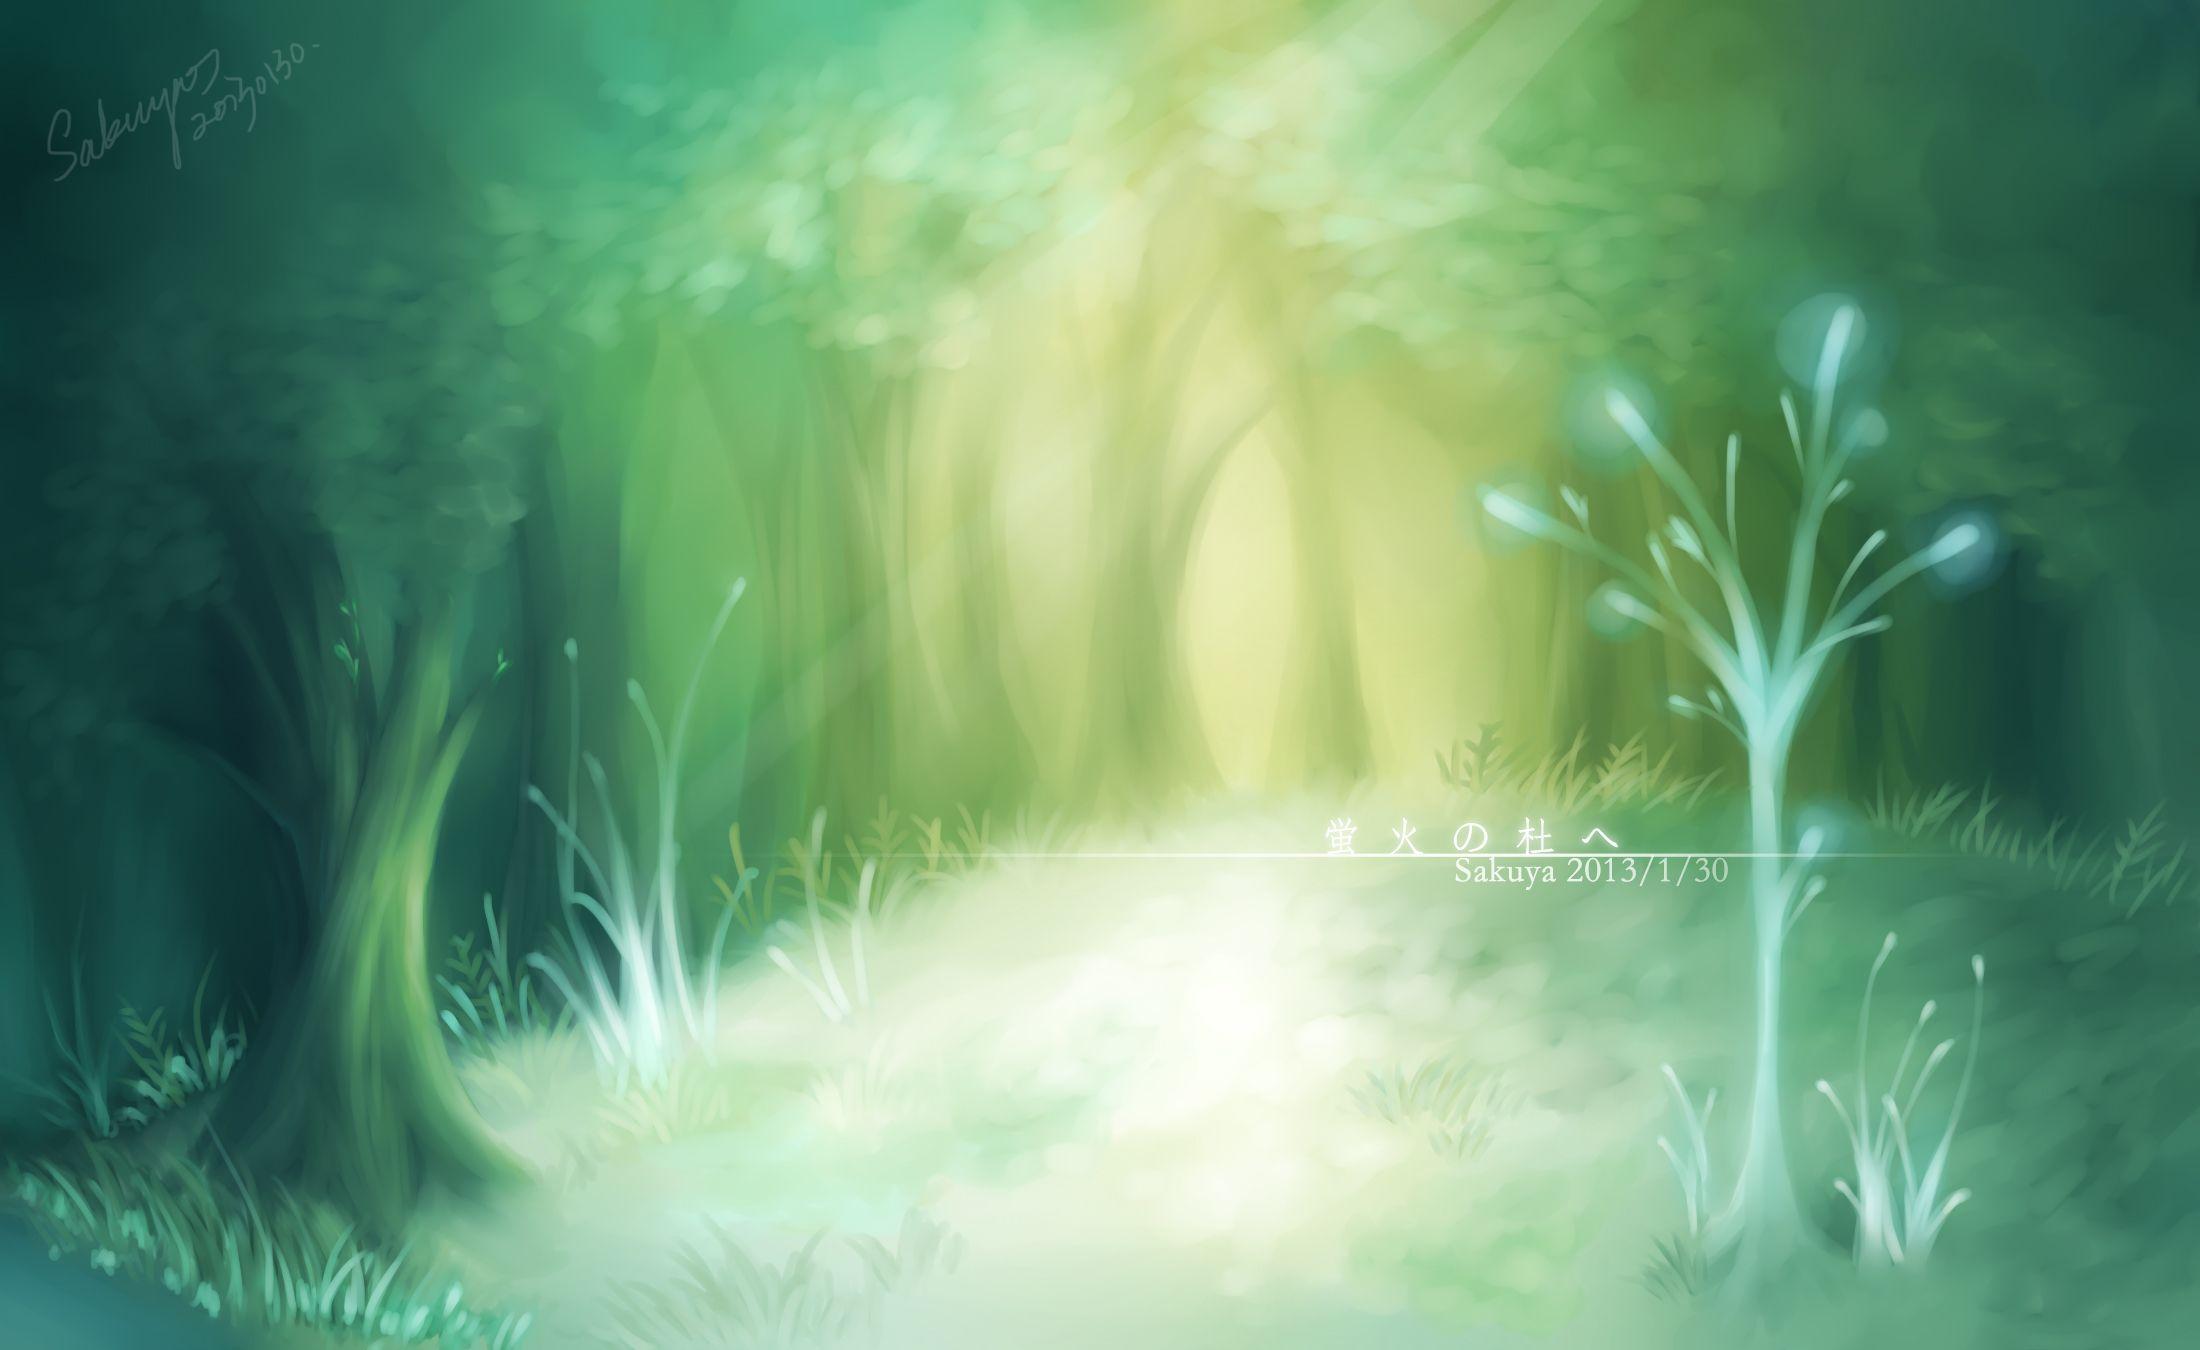 Hotarubi no Mori e (Into The Forest Of Fireflies Light)